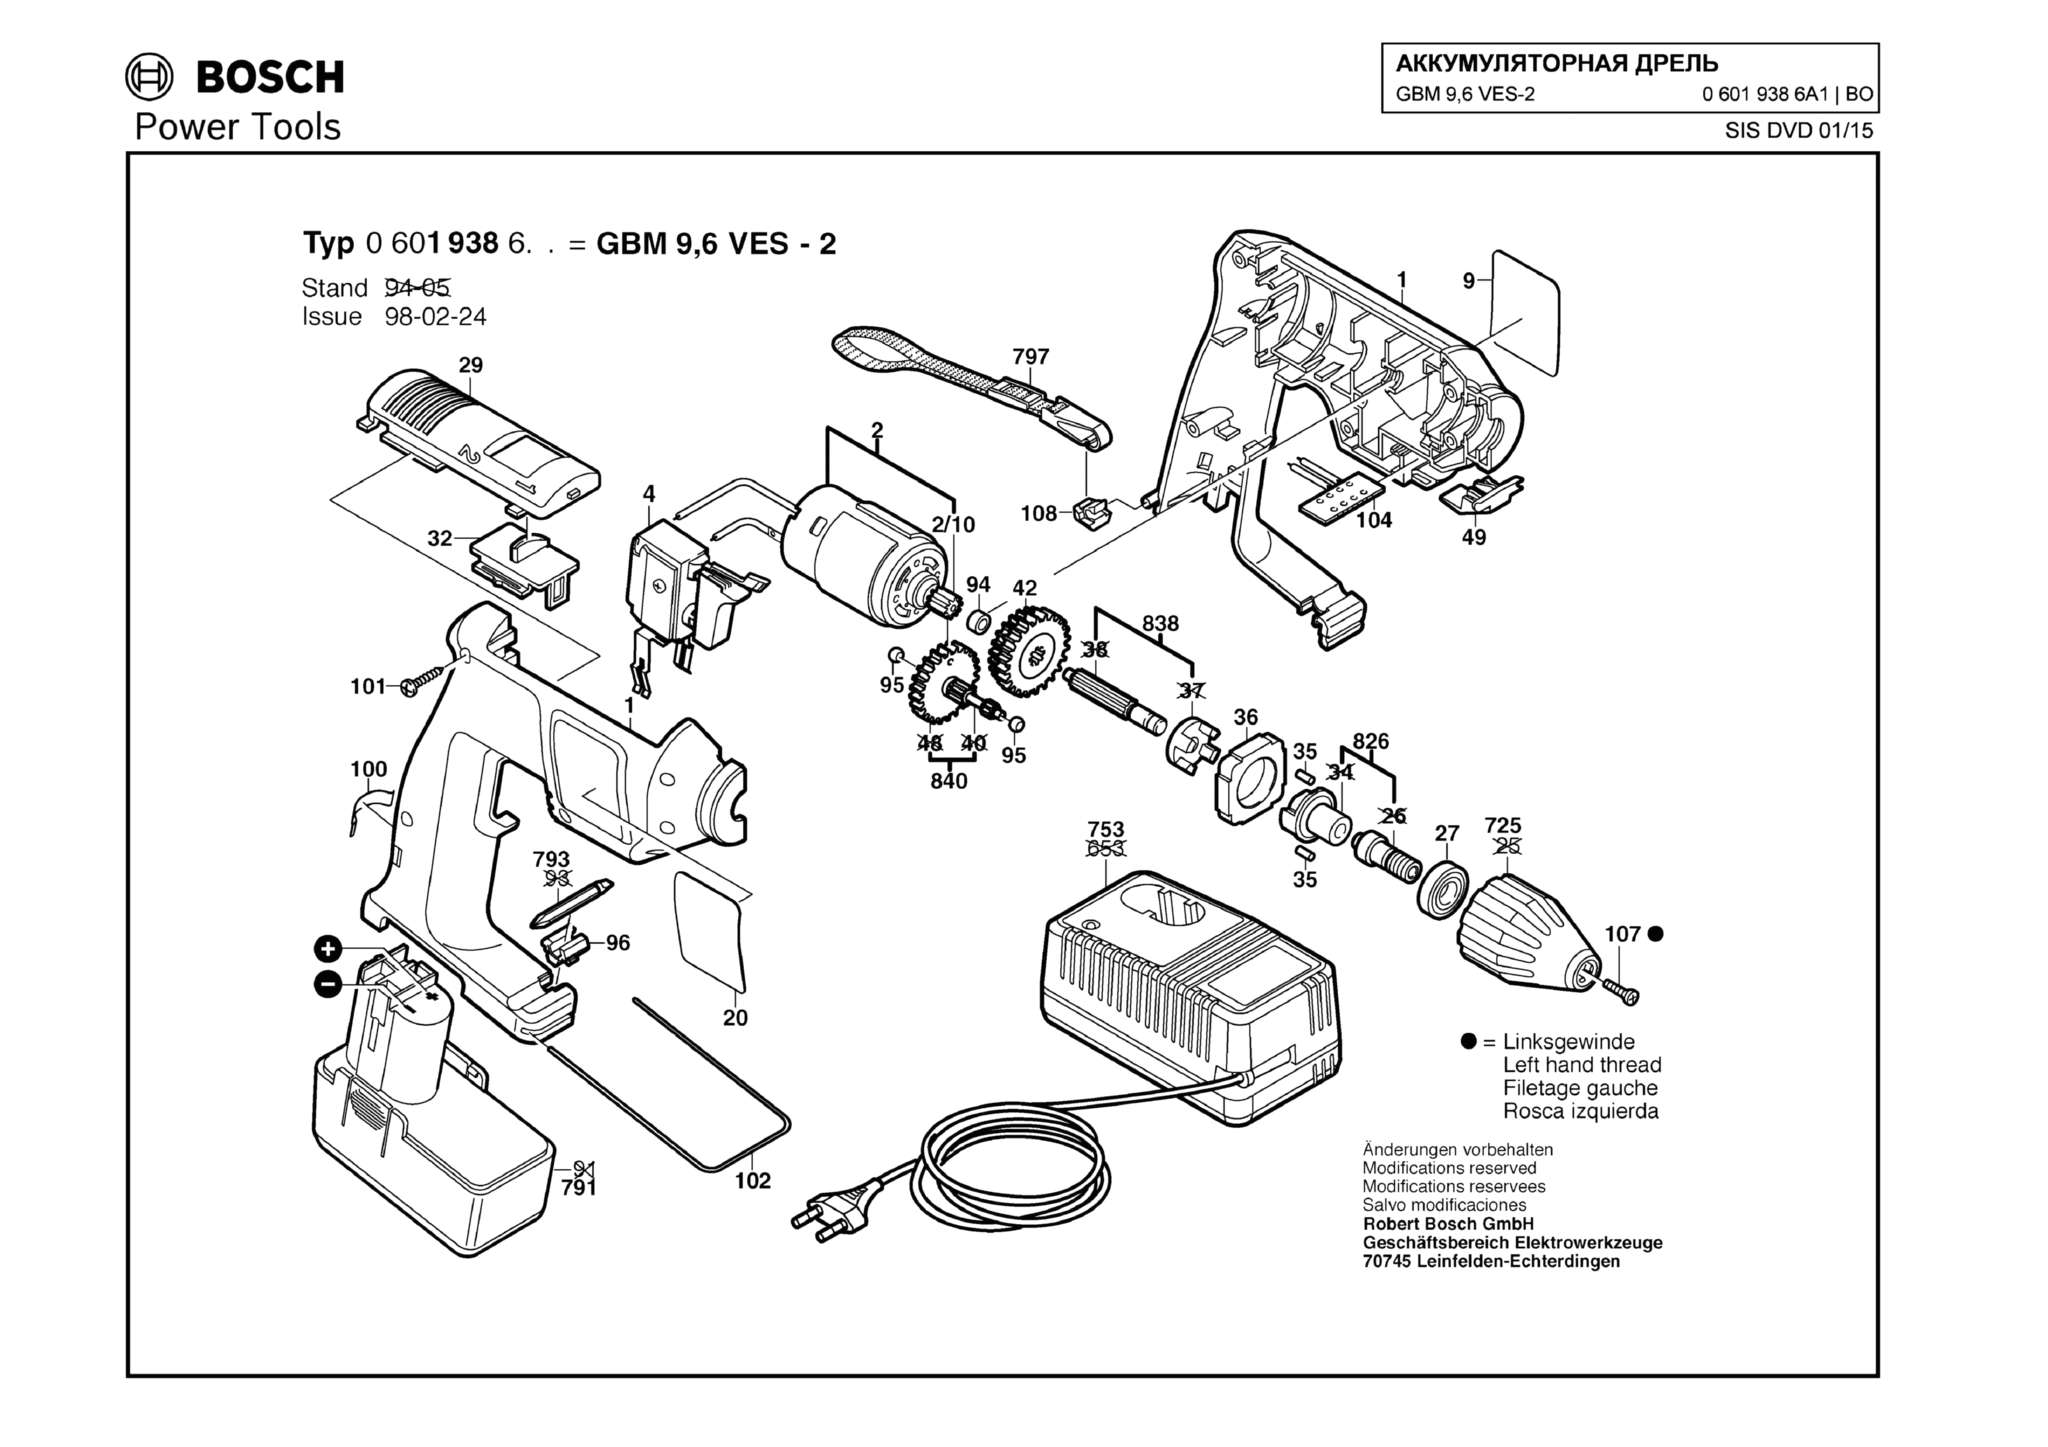 Запчасти, схема и деталировка Bosch GBM 9,6 VES-2 (ТИП 06019386A1)